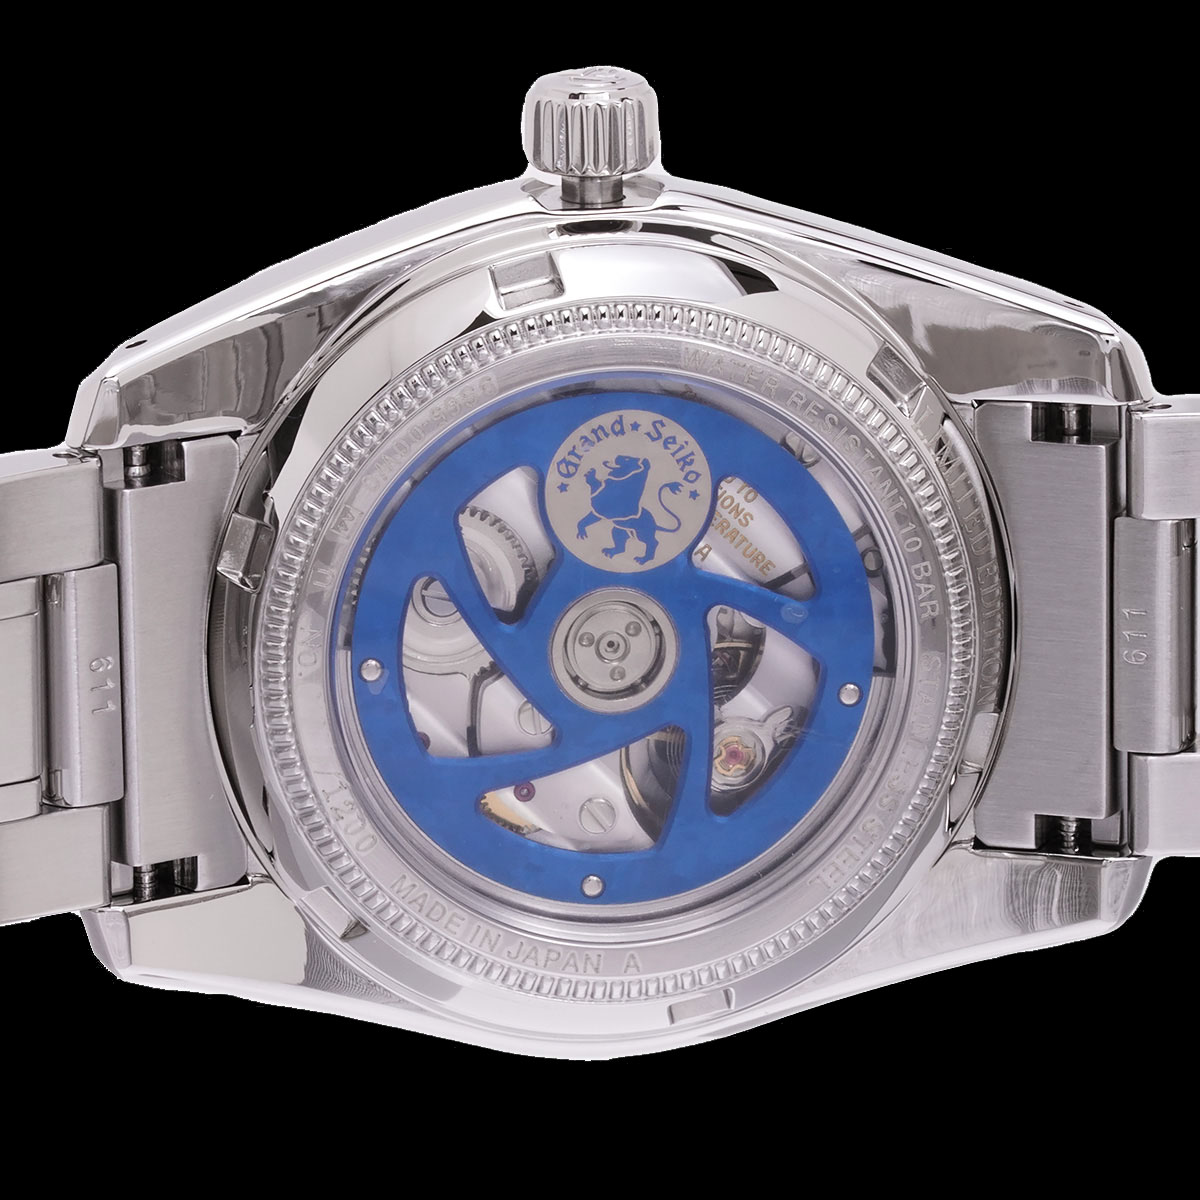 SBGR325 グランドセイコー 自動巻き メンズ腕時計 | 井上時計店